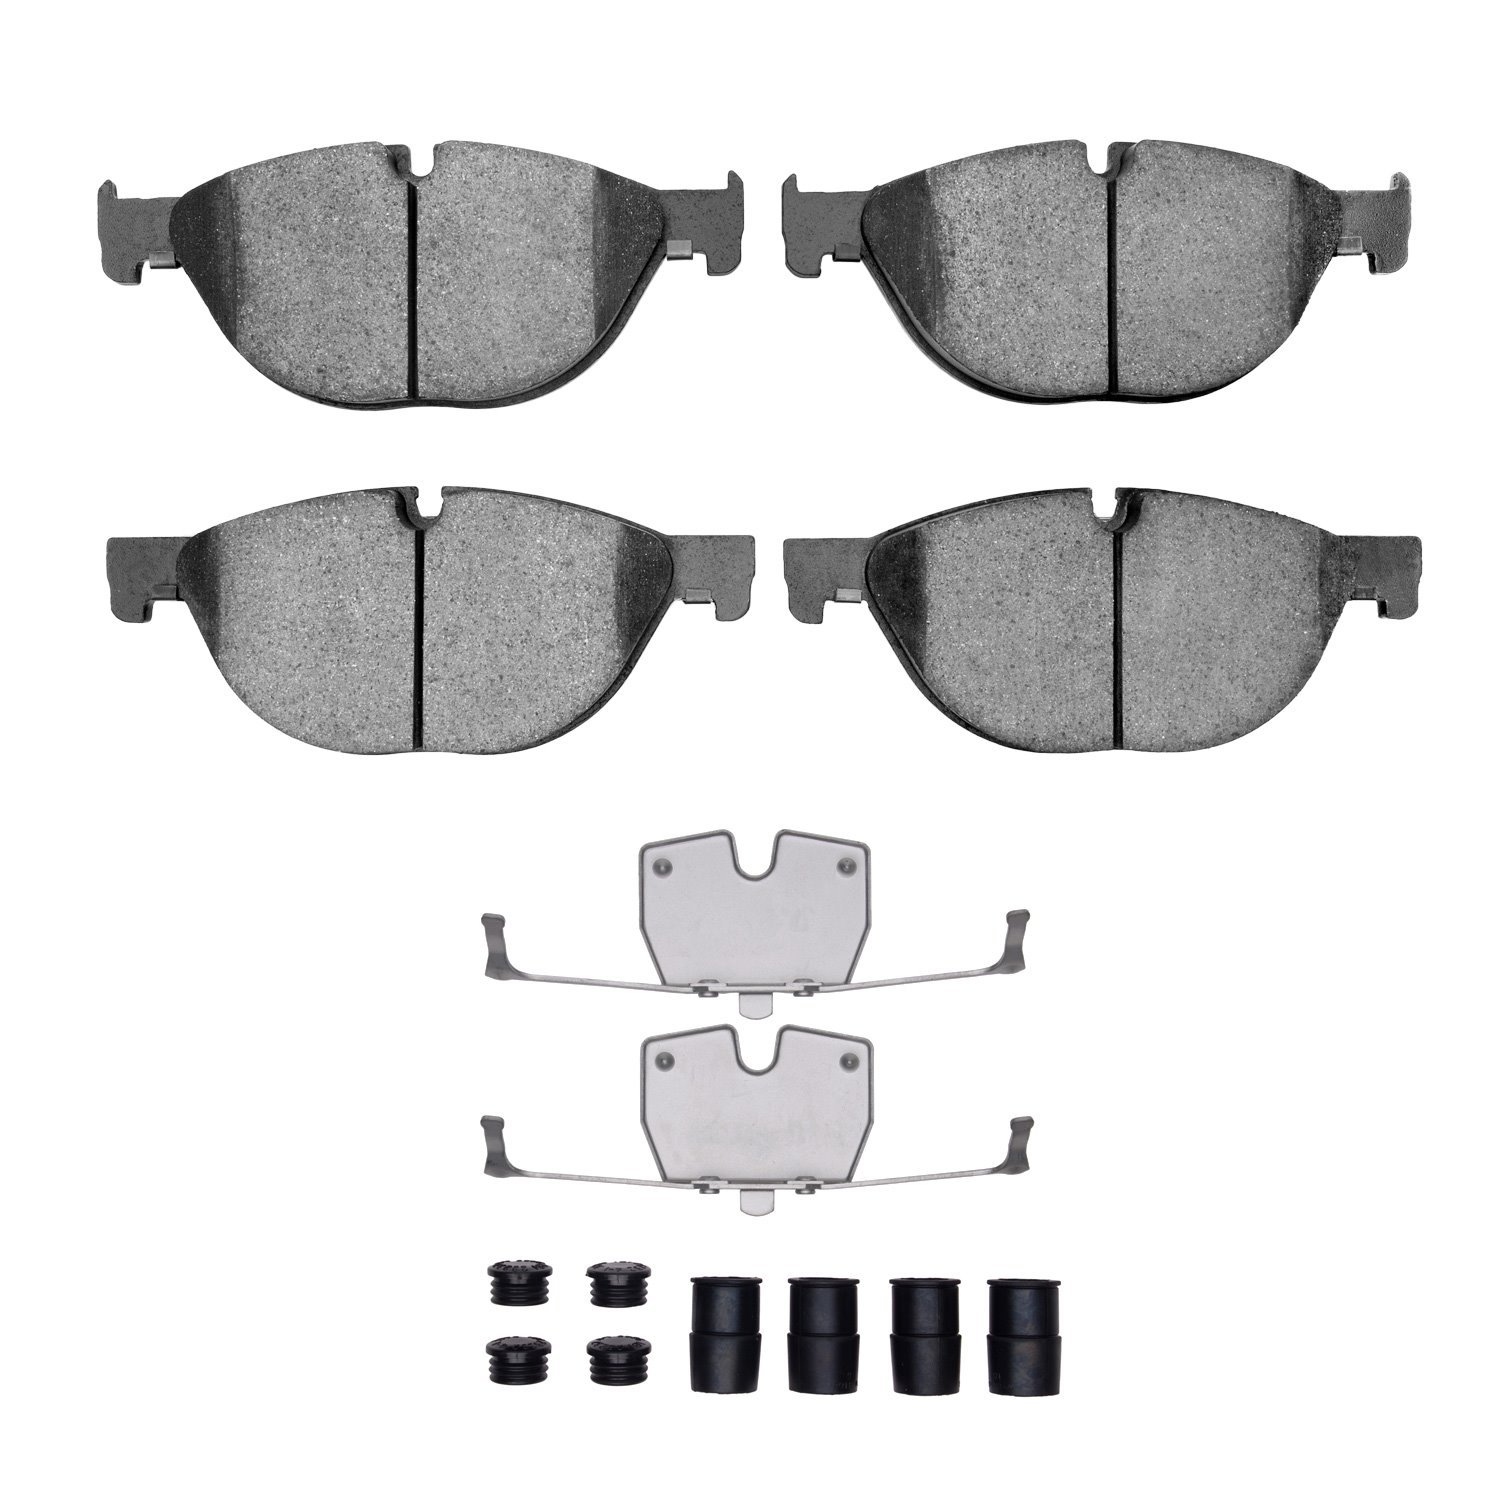 1311-1409-01 3000-Series Semi-Metallic Brake Pads & Hardware Kit, 2009-2018 BMW, Position: Front